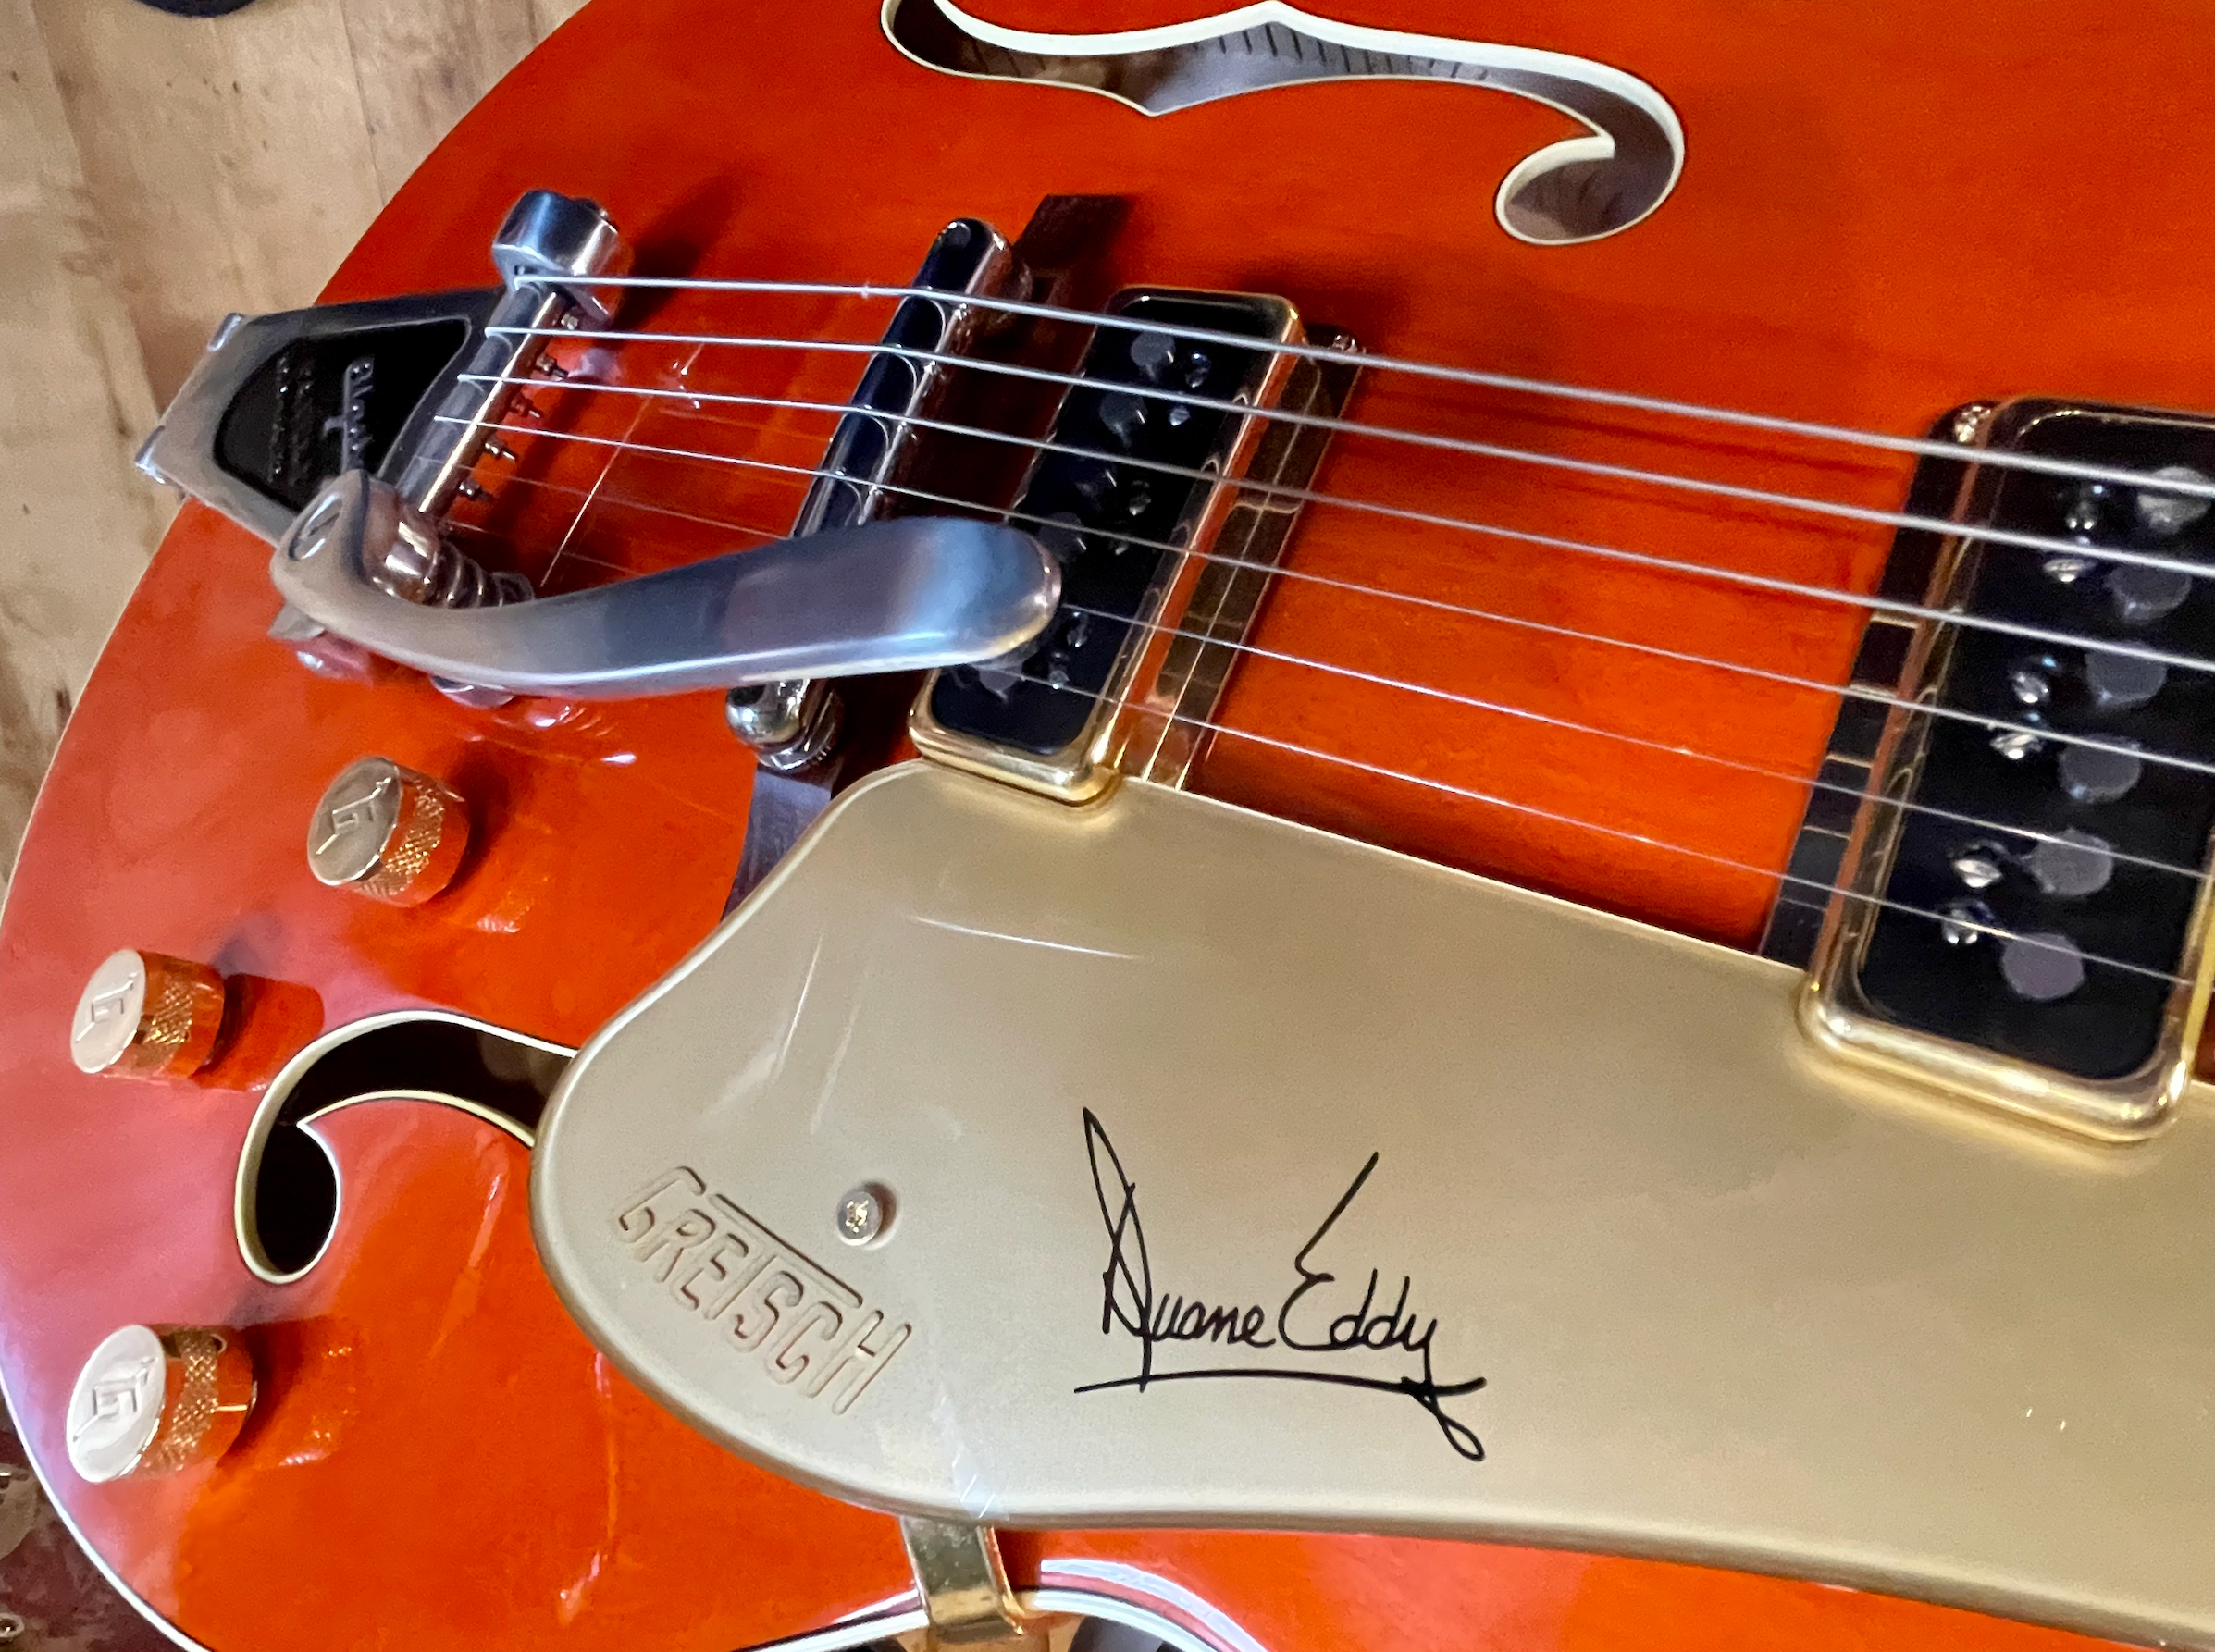 Duane Eddy signature guitar